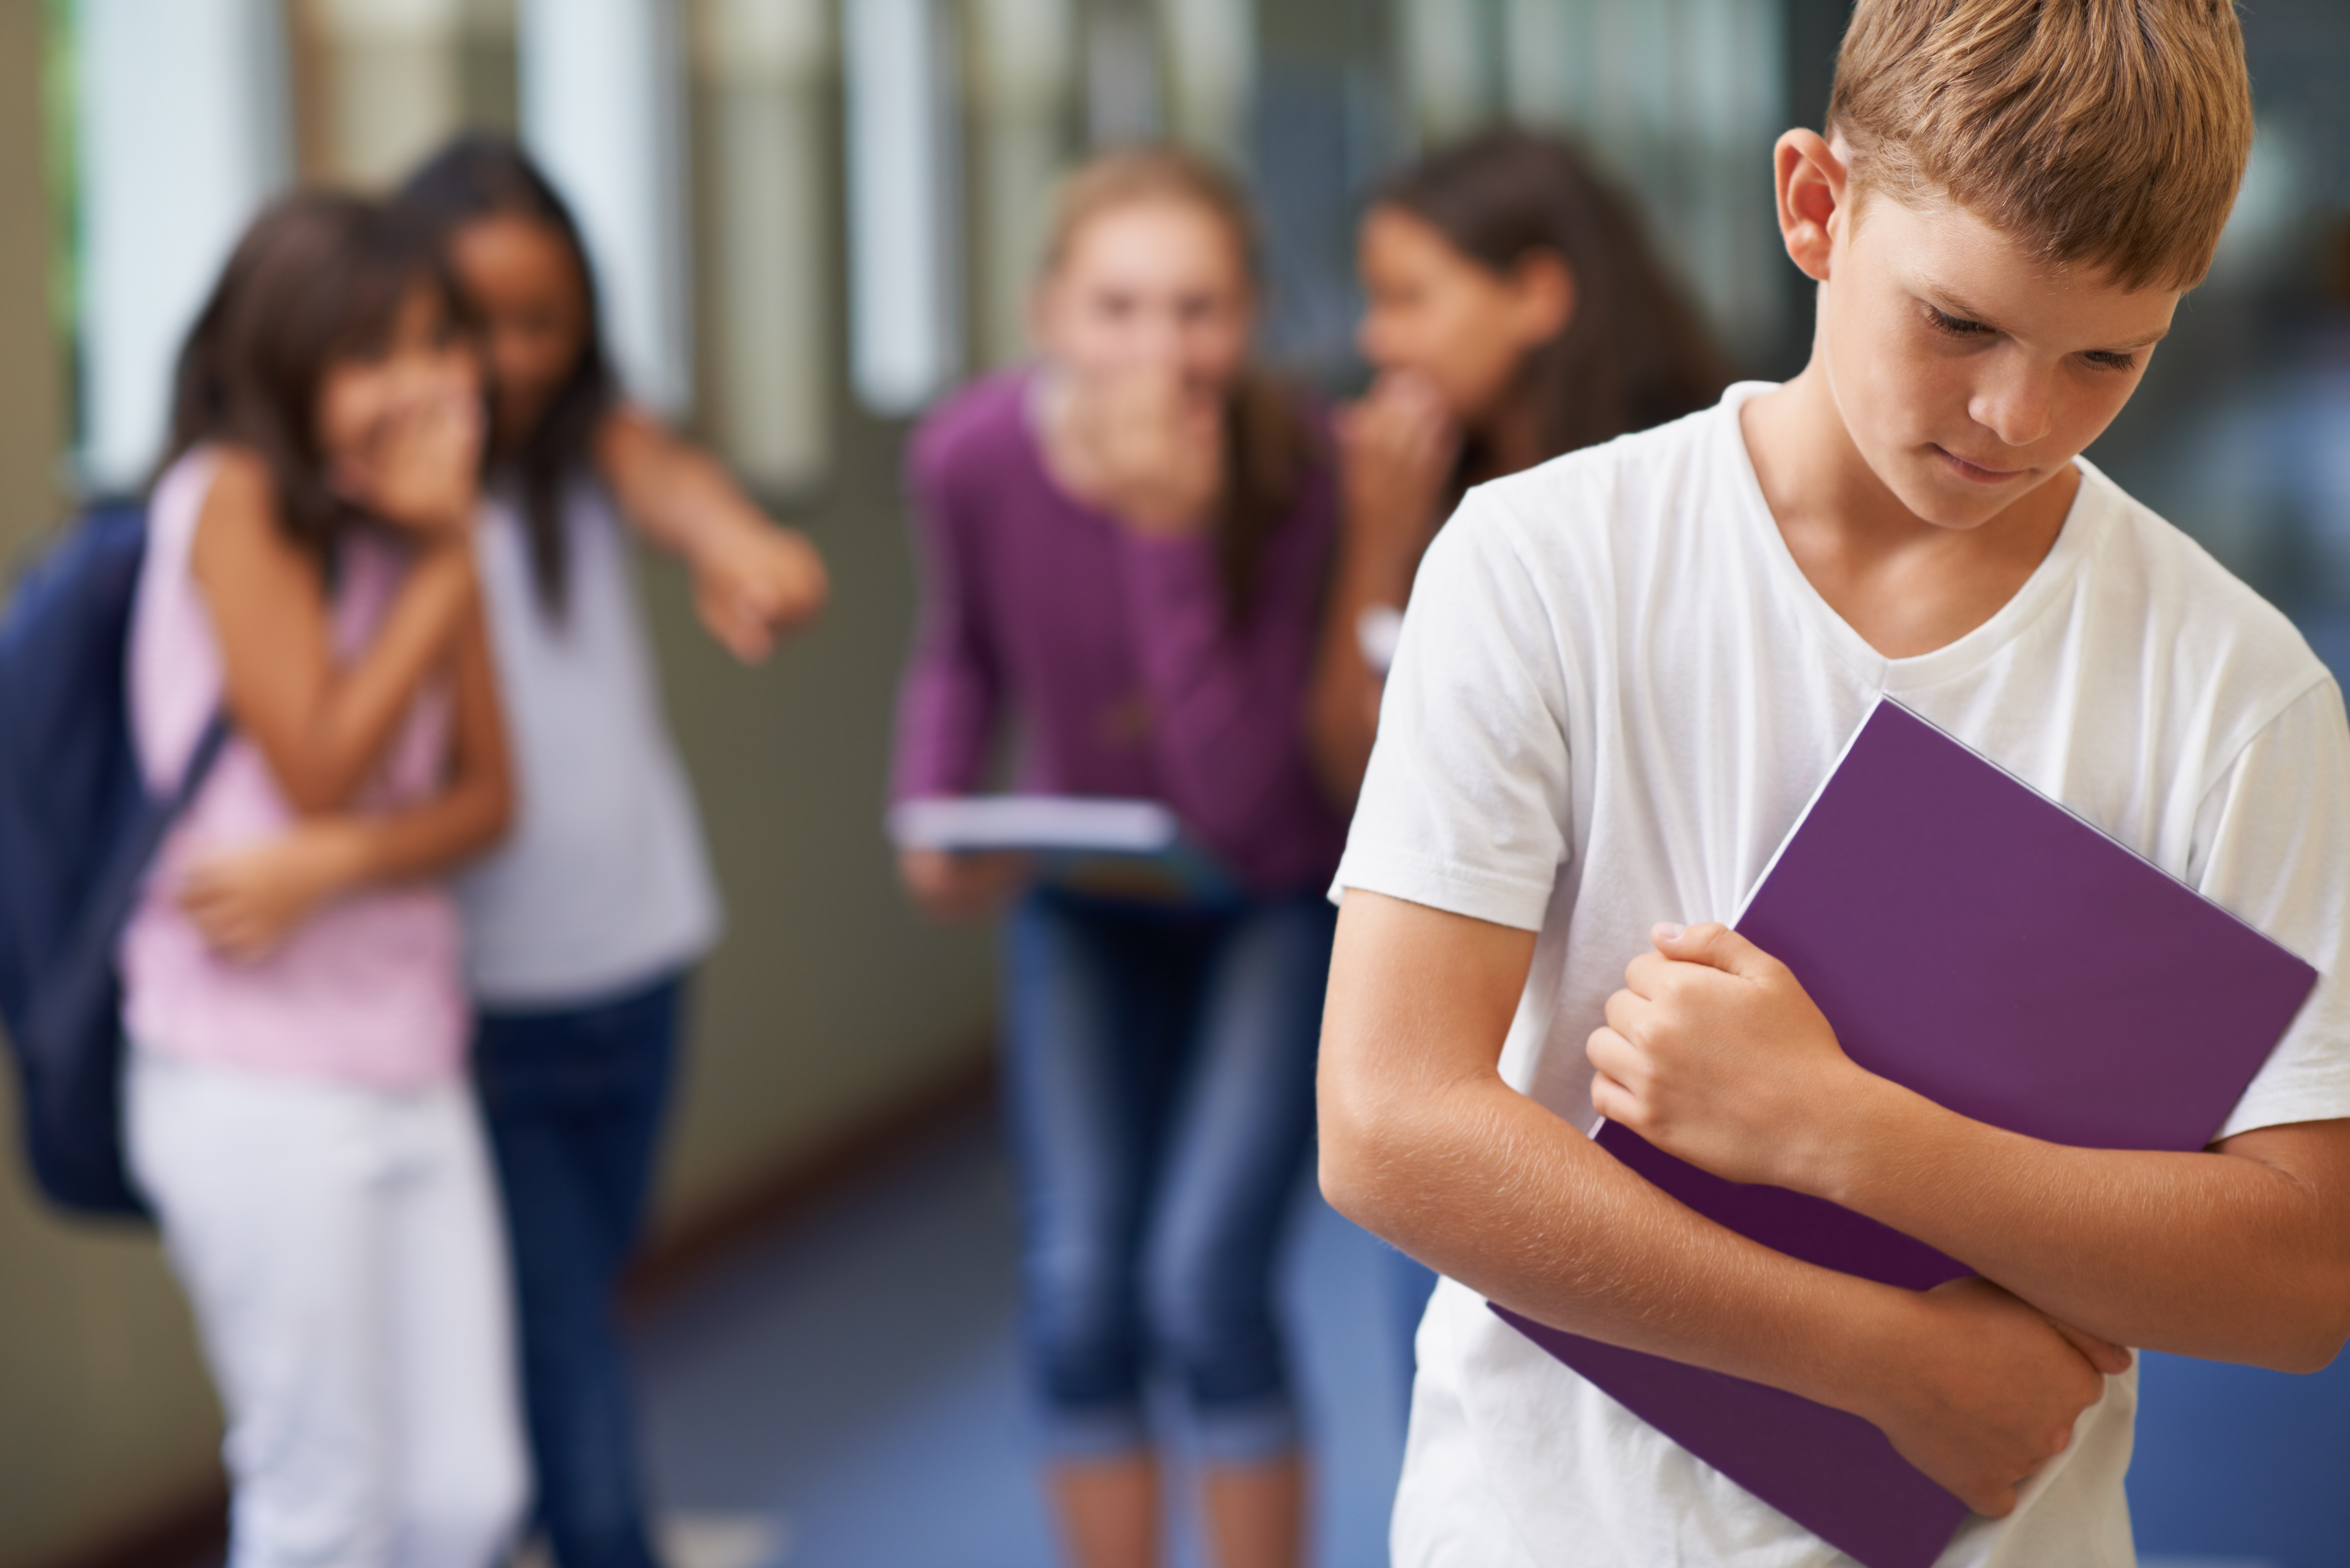 Des écoliers intimident un autre enfant à l'école | Source : Shutterstock